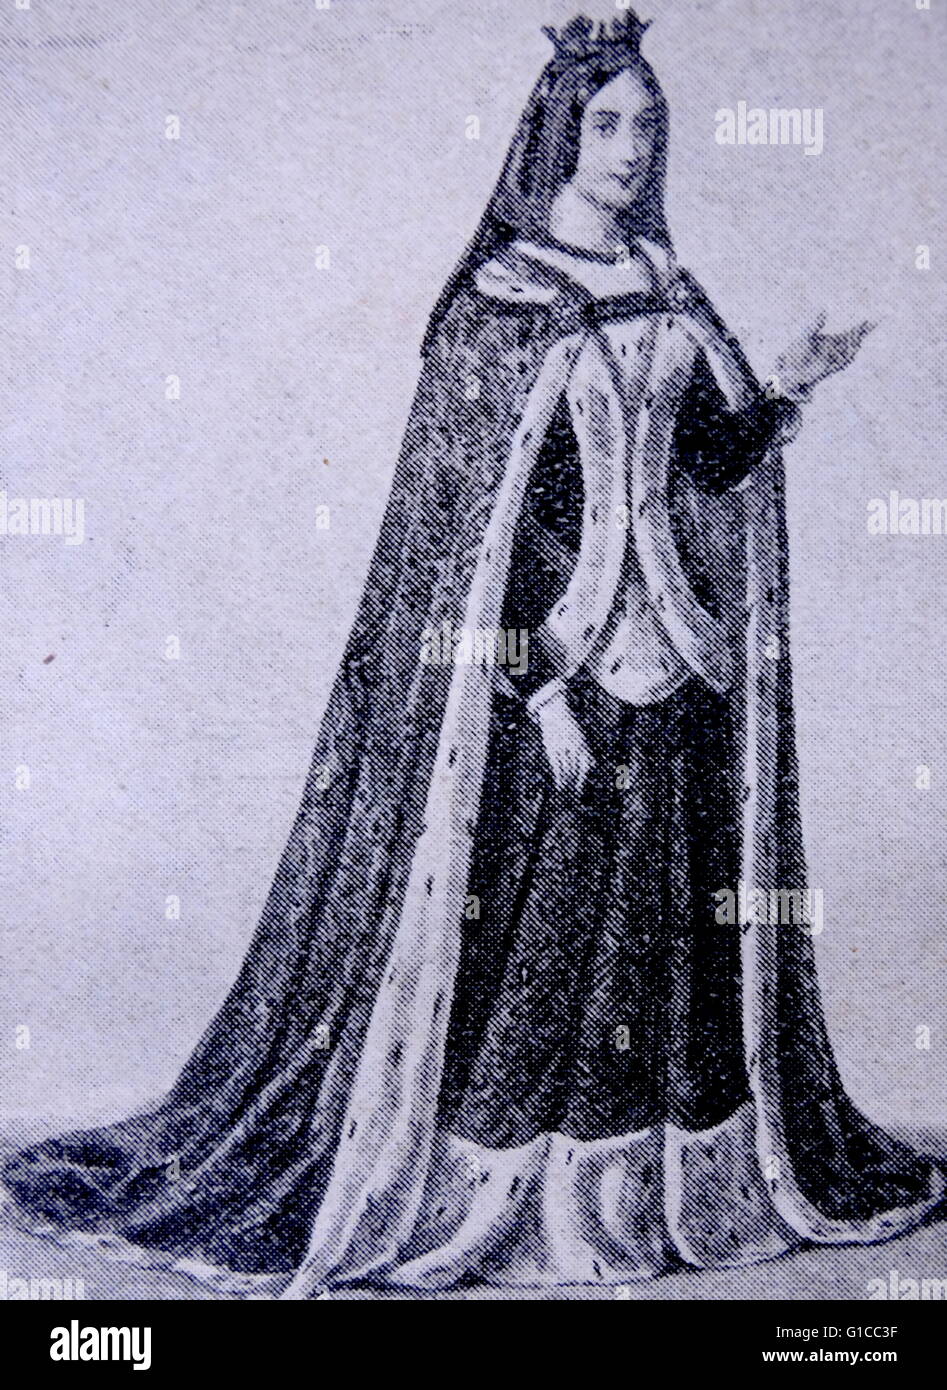 Reina Consorte de Castilla y León, Isabel I de Castilla (1451-1504), casada con Fernando II de Aragón. Fecha del siglo XV. Foto de stock